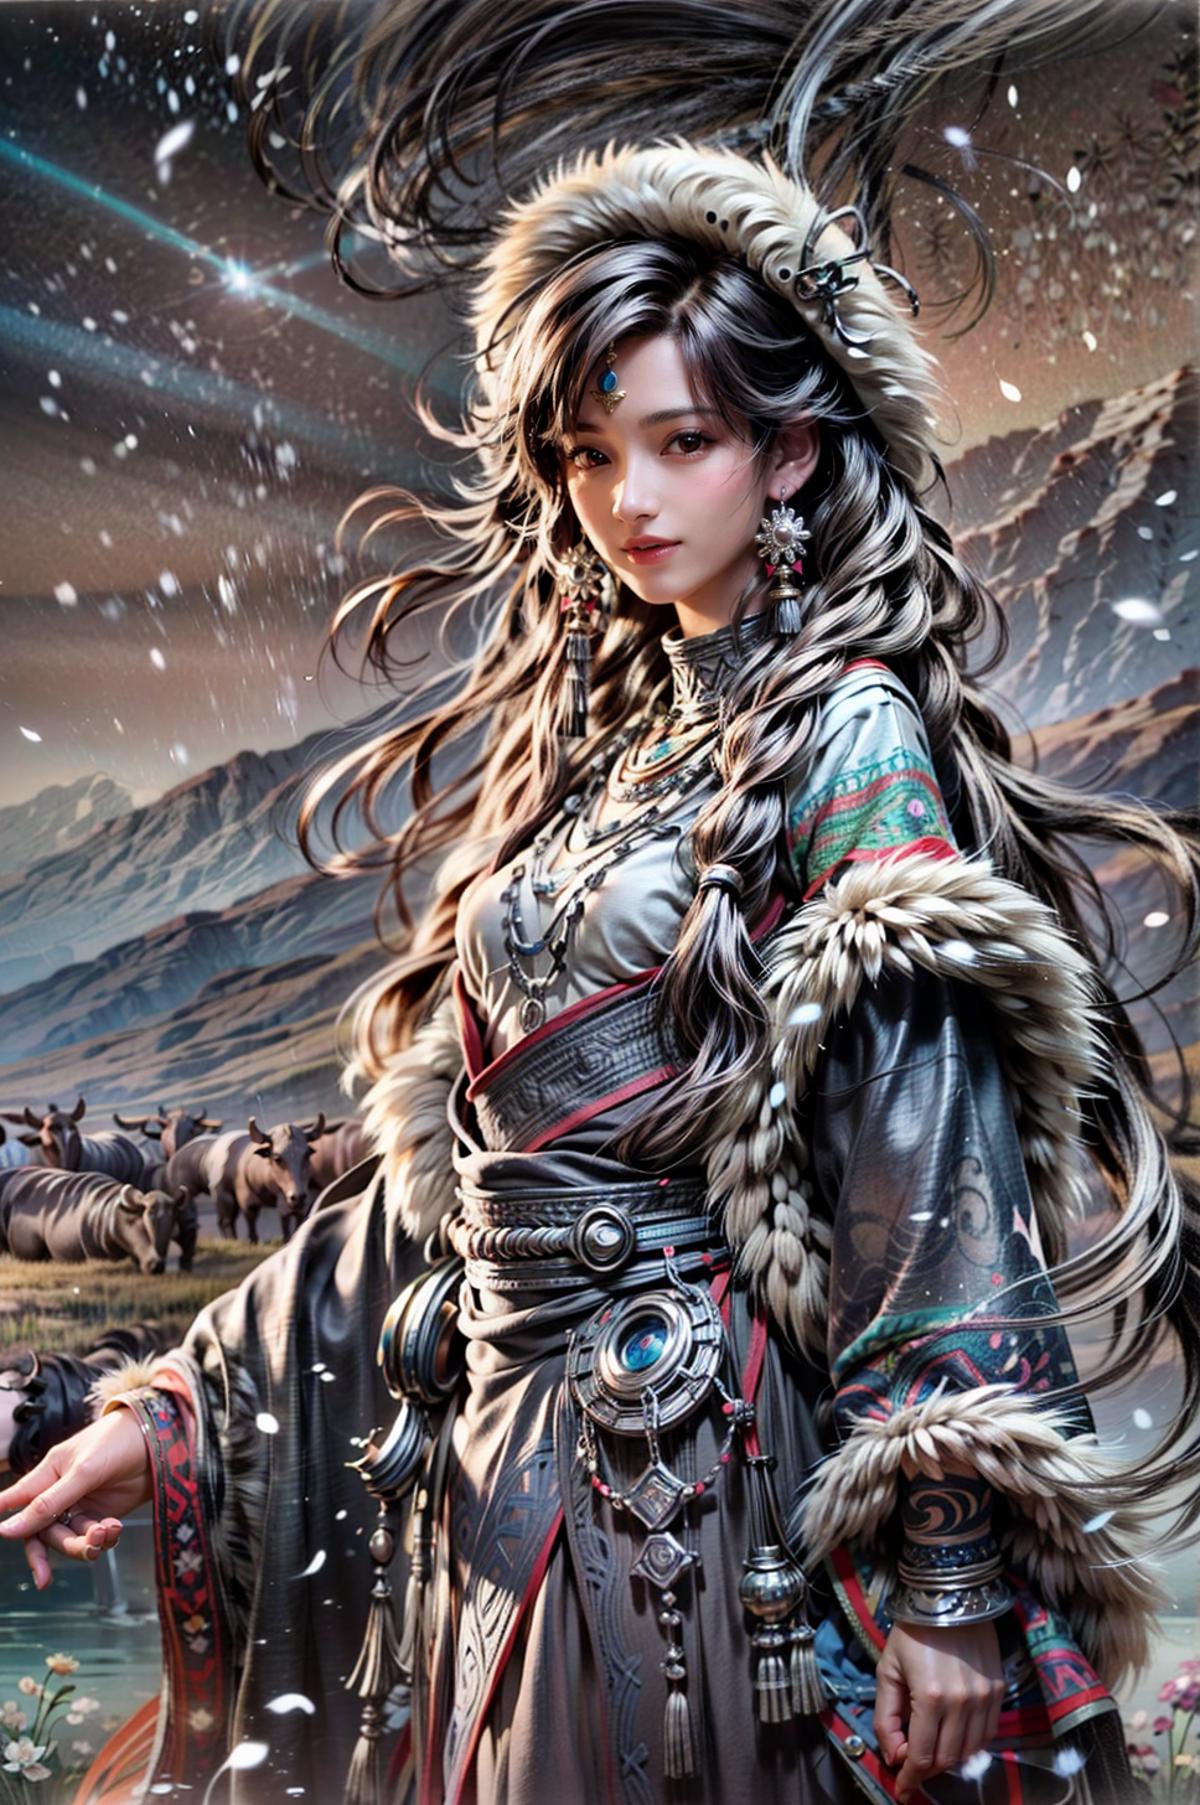 Tibetan 藏族 | Chinese style image by yoyochen2023